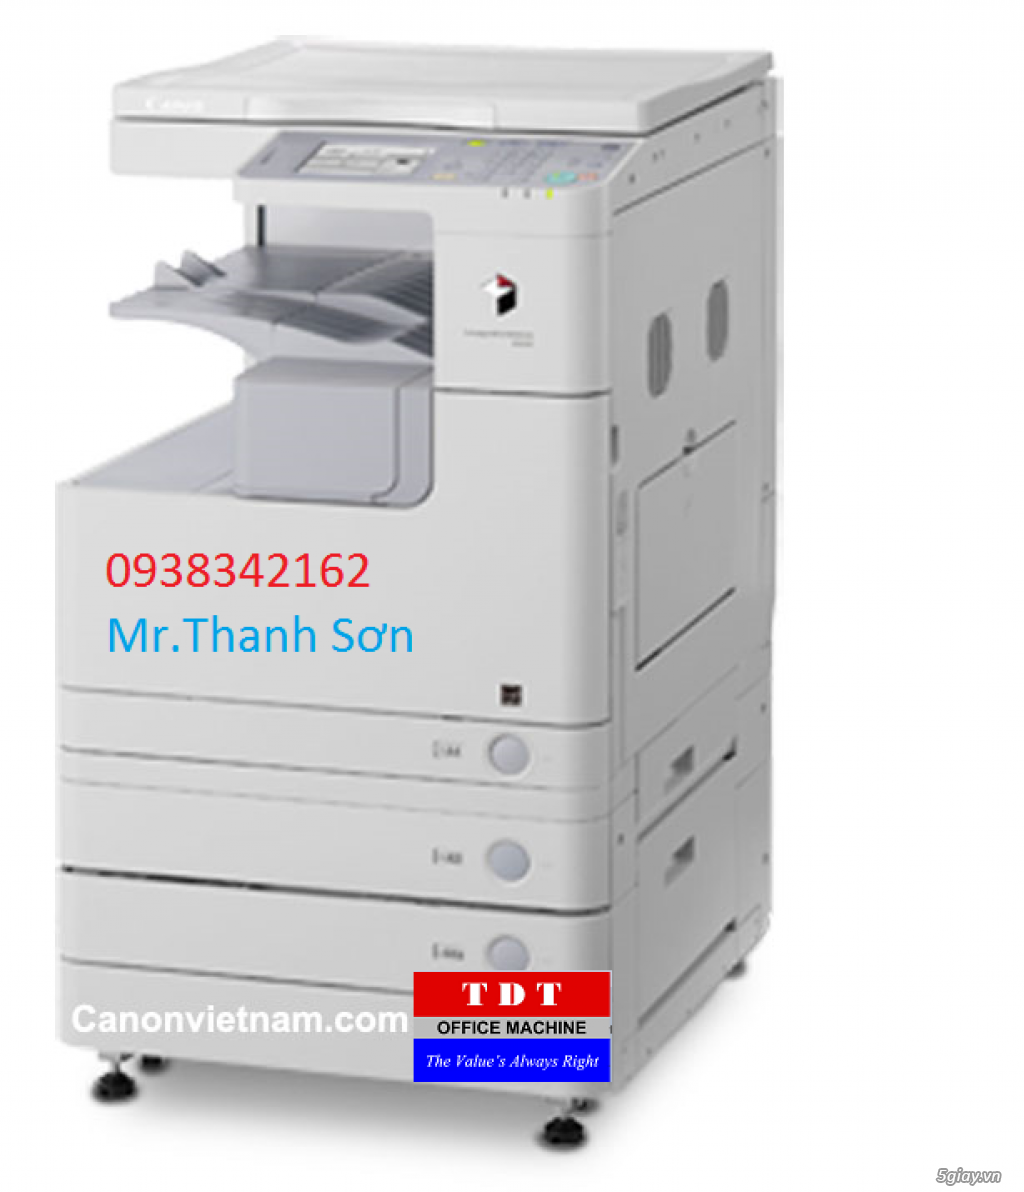 Canon Tân Đại Thành thương hiệu uy tín trên 15 năm về máy Photocopy - 3